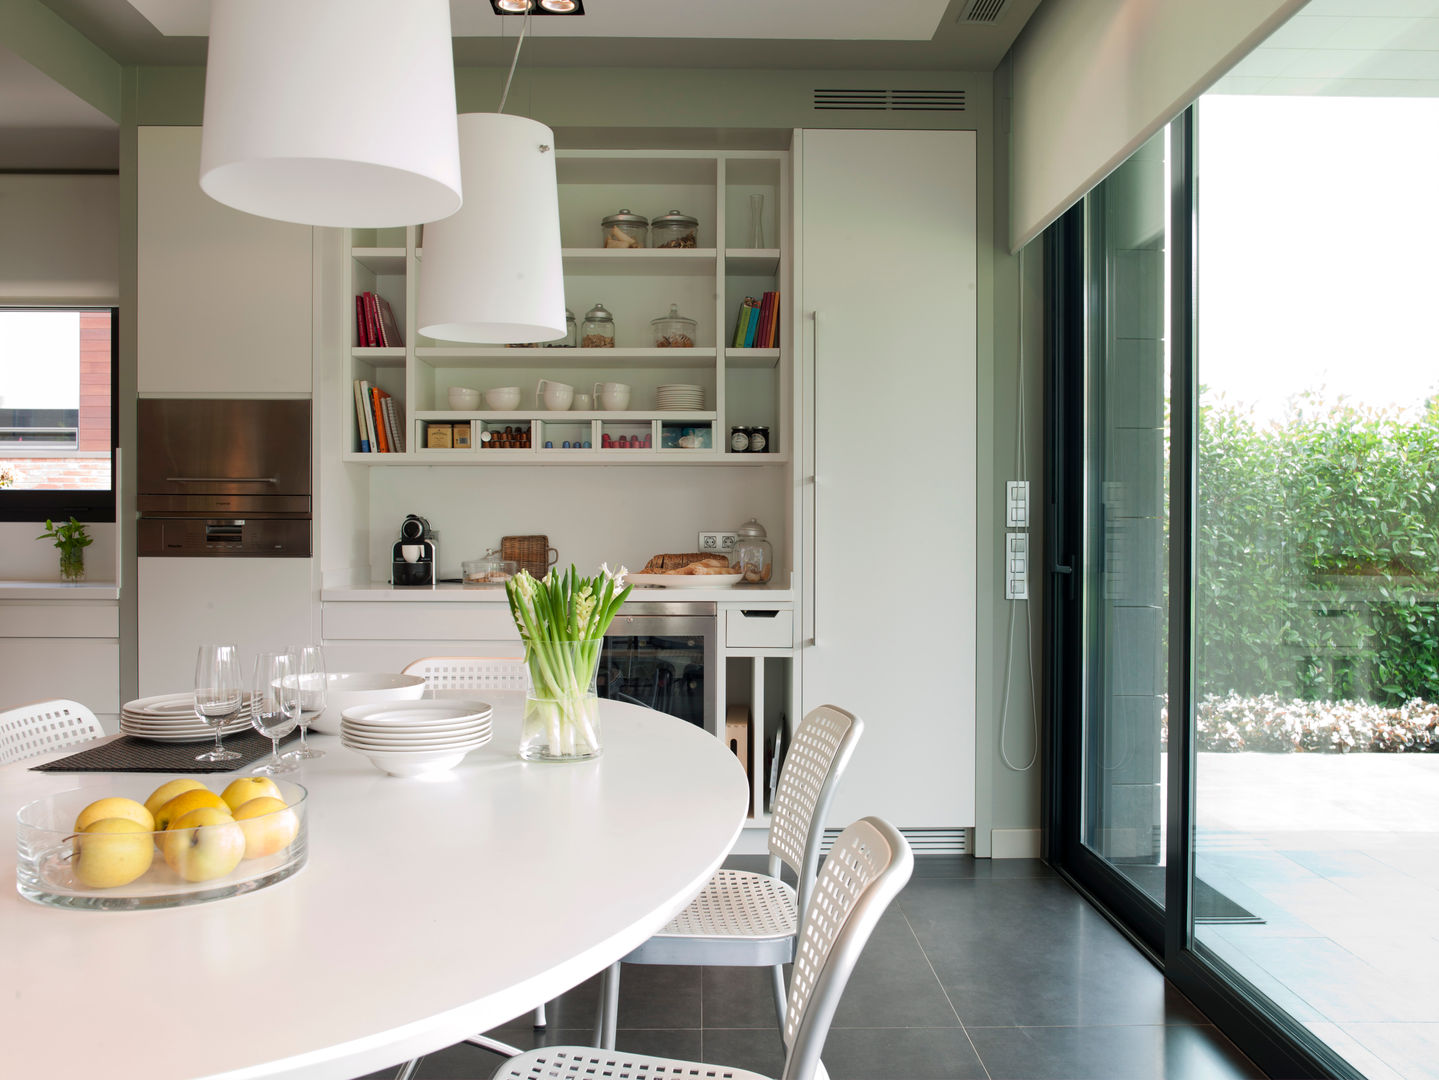 Cocina y planchador actuales, DEULONDER arquitectura domestica DEULONDER arquitectura domestica Modern Kitchen